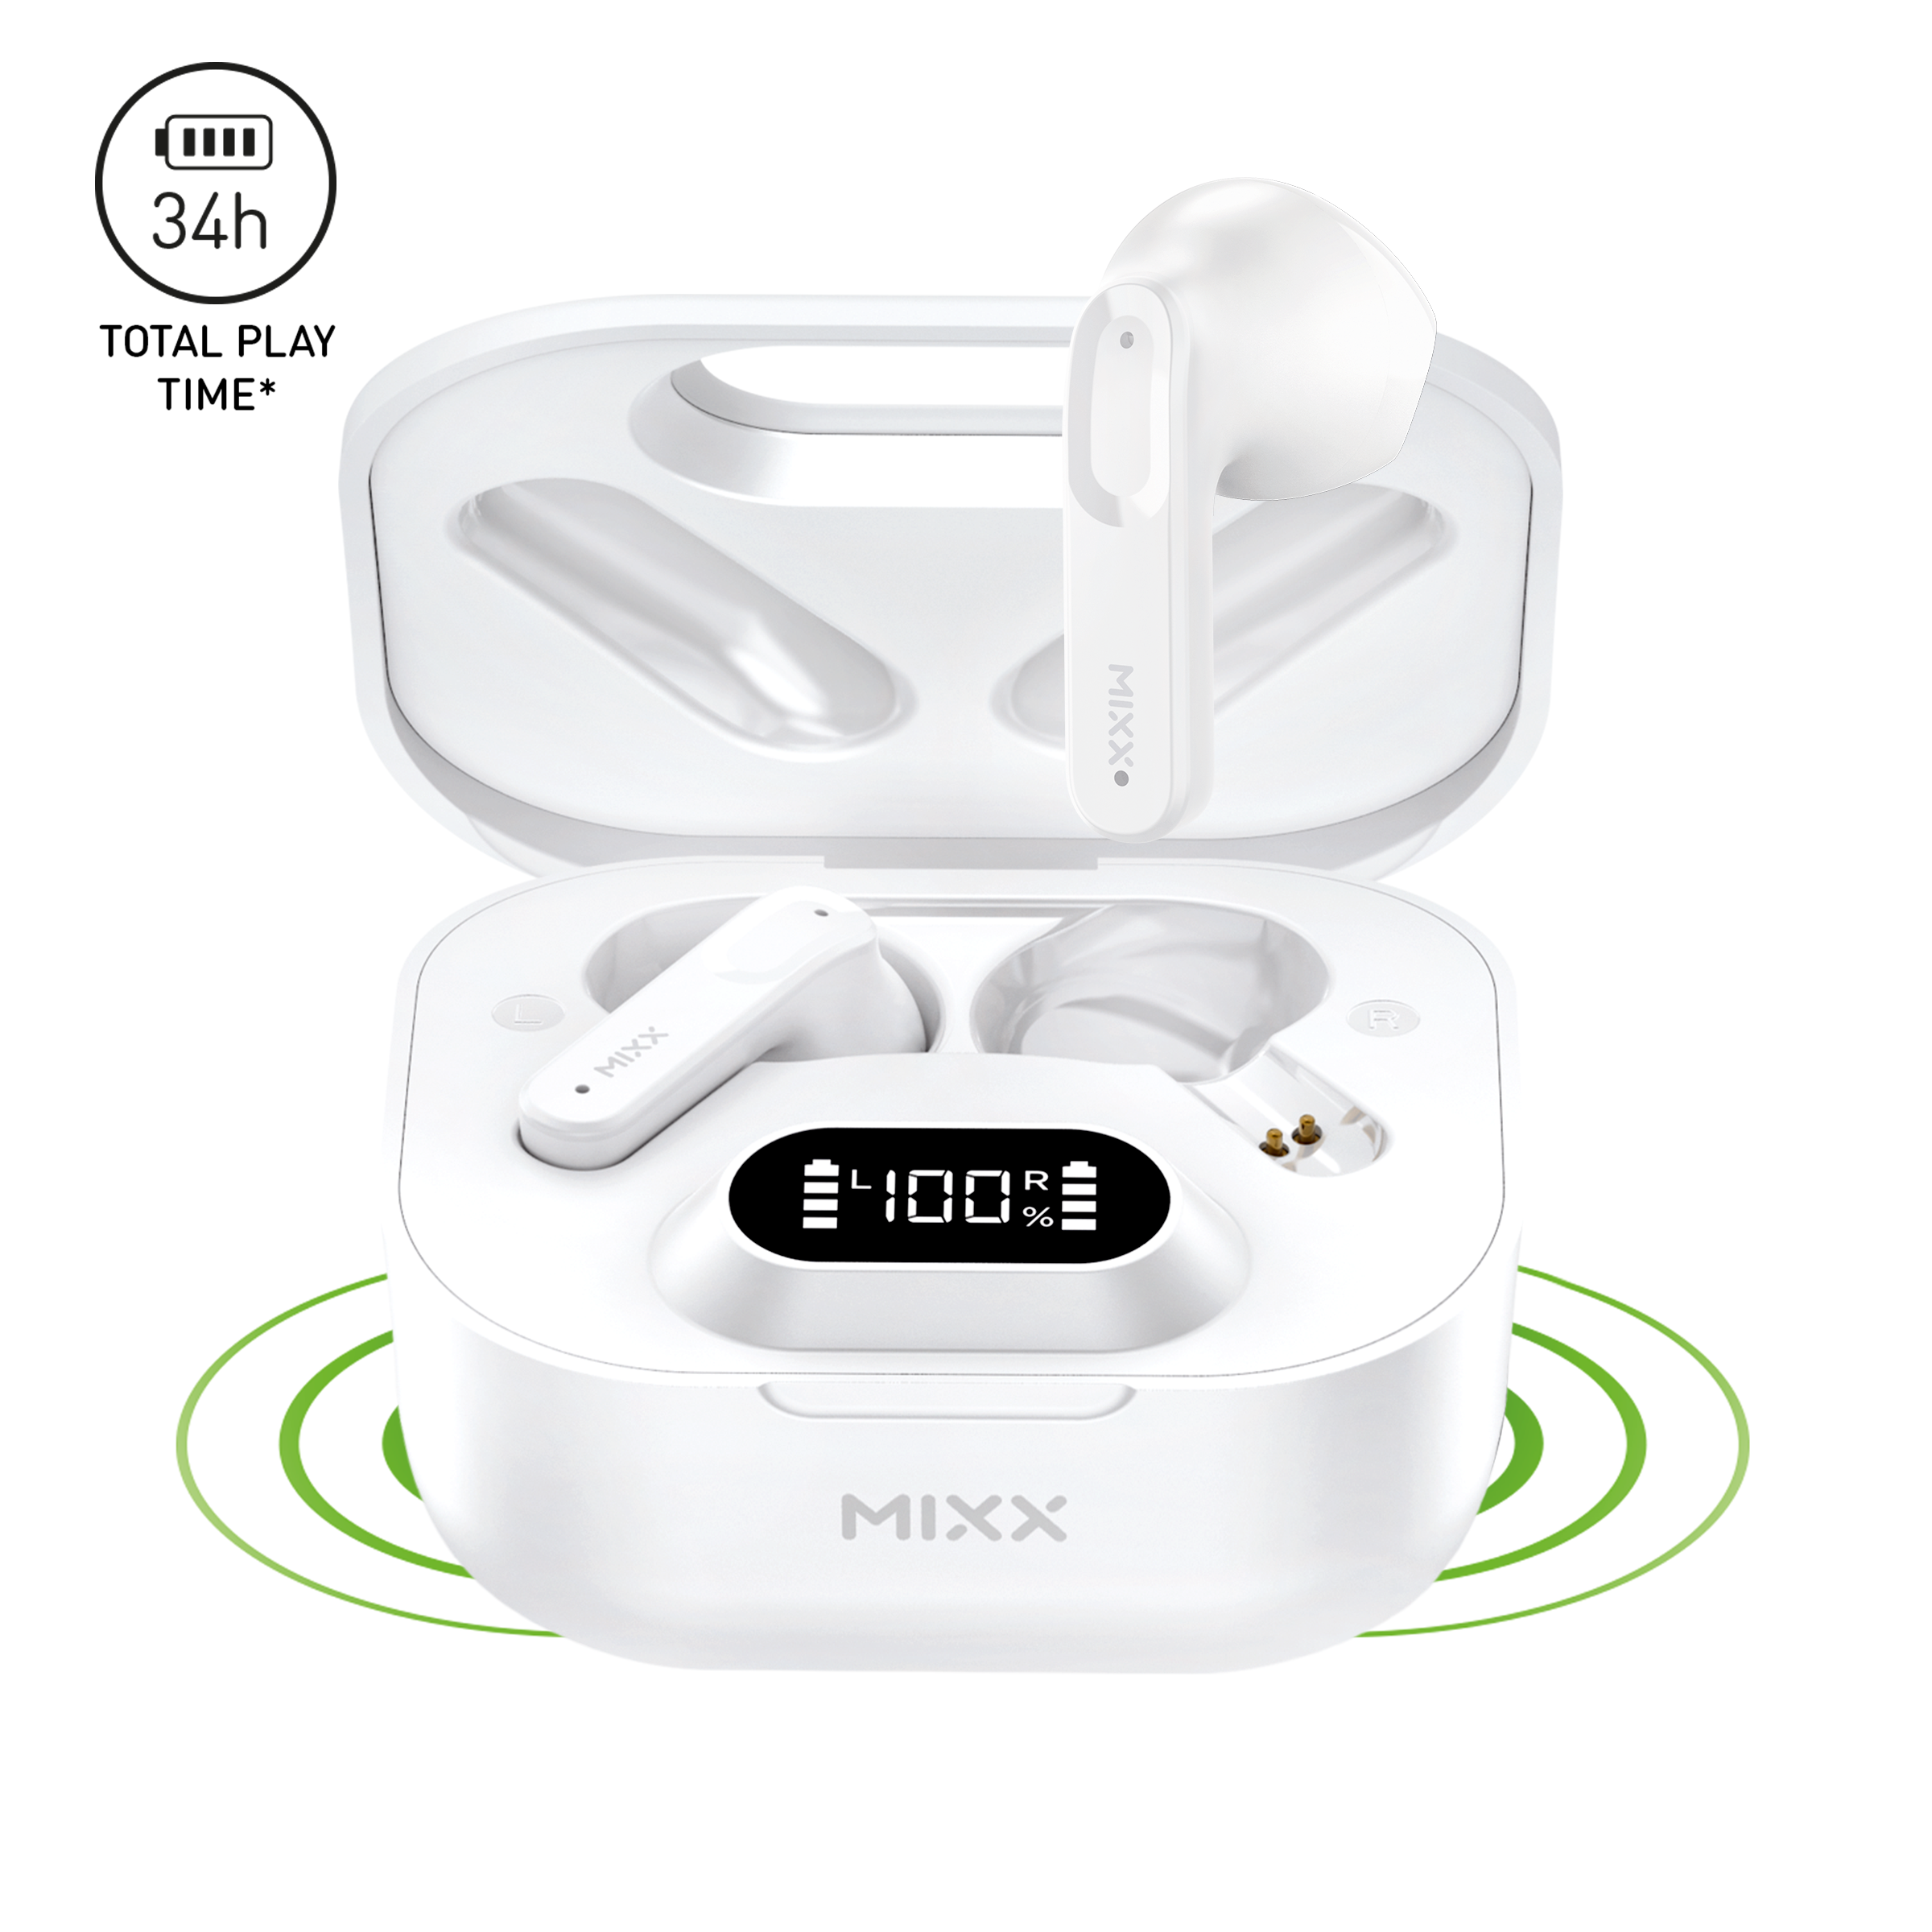 MIXX STREAMBUDS HYBRID CHARGE WIRELESS EARBUDS Mixx Audio